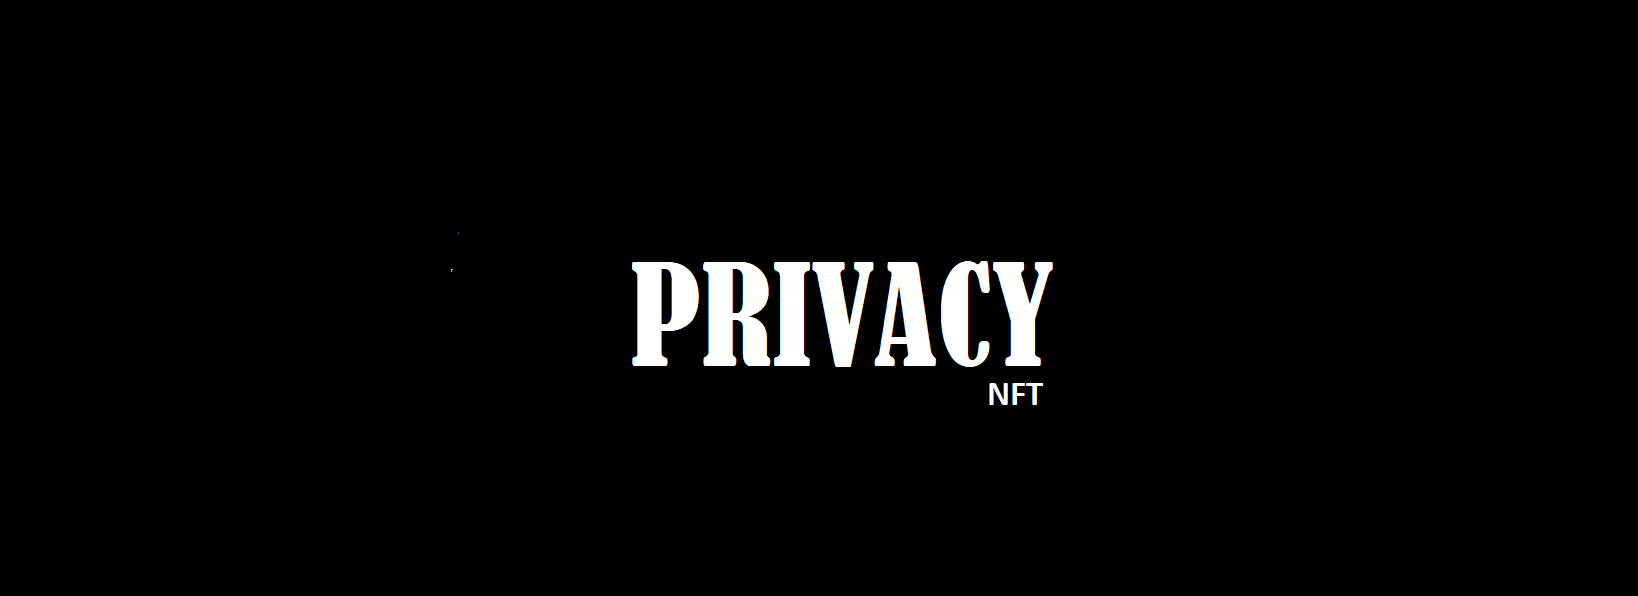 PrivacyNFT バナー